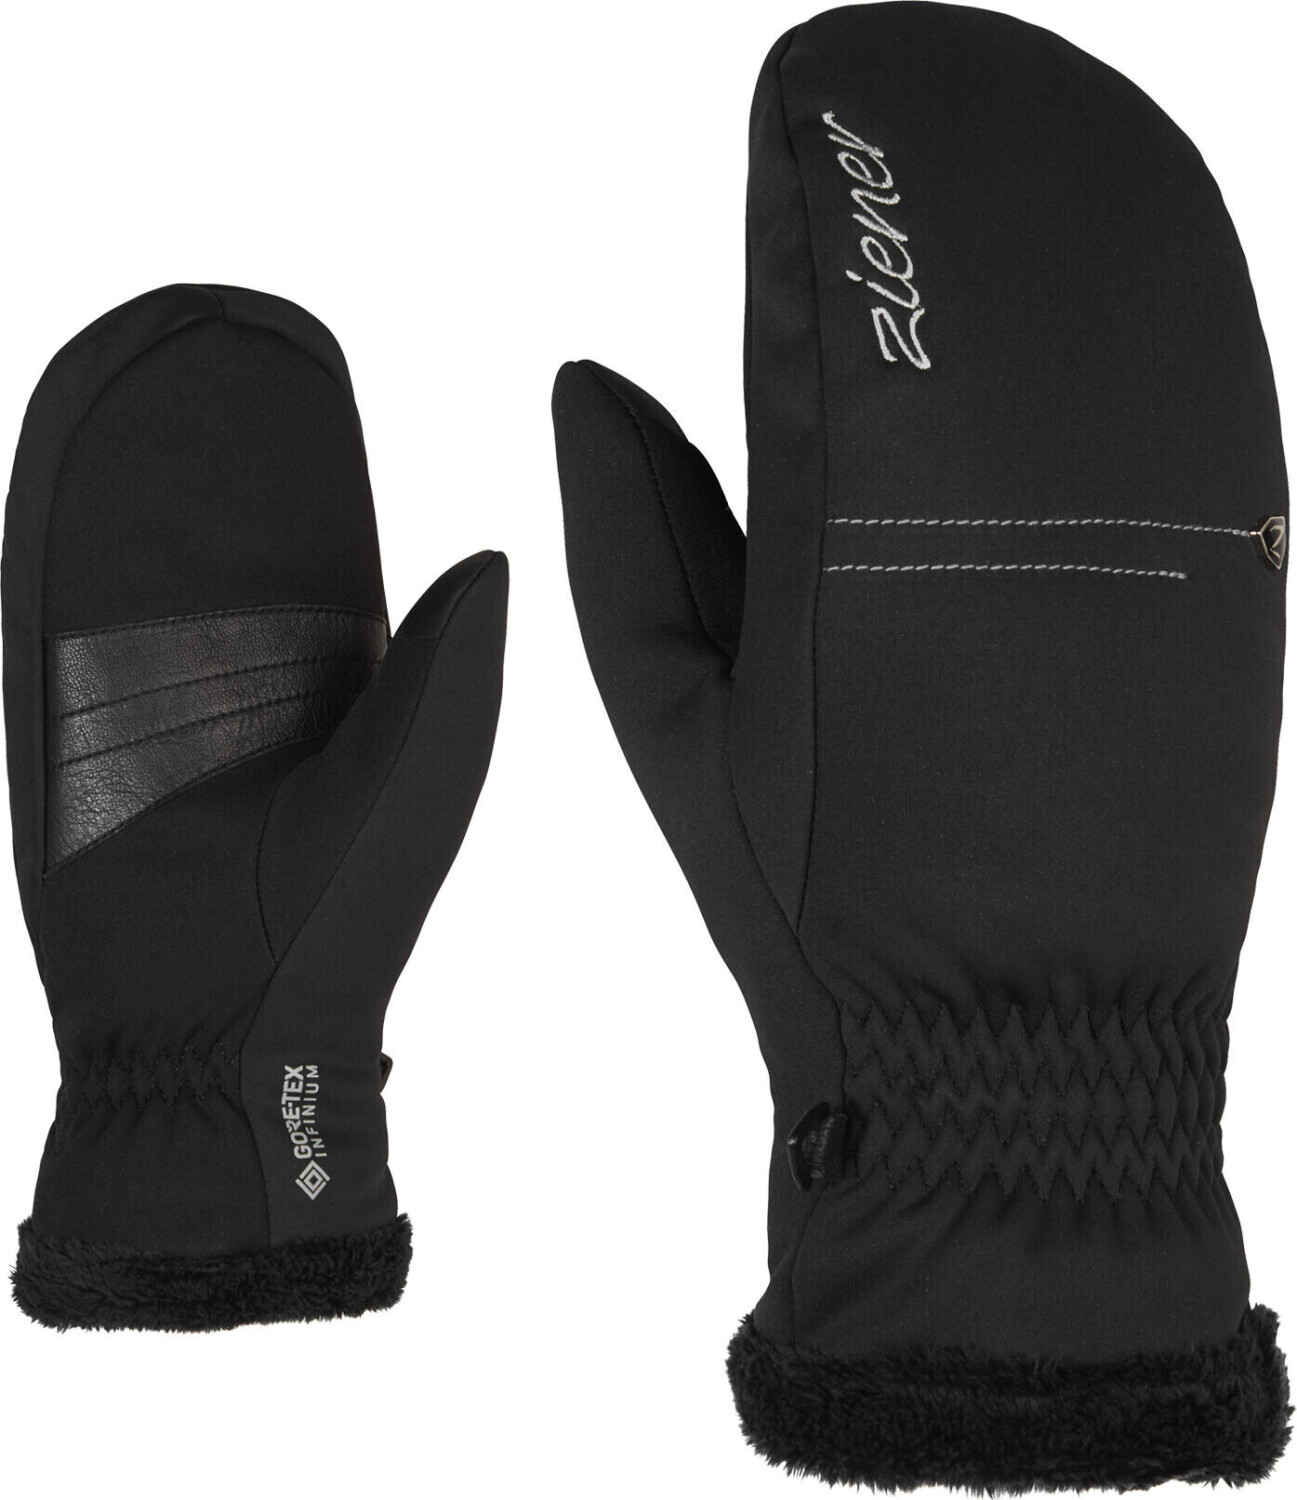 Ziener Idinia GTX INF Touch Mitten Lady Glove Multisport black ab 24,15 € |  Preisvergleich bei